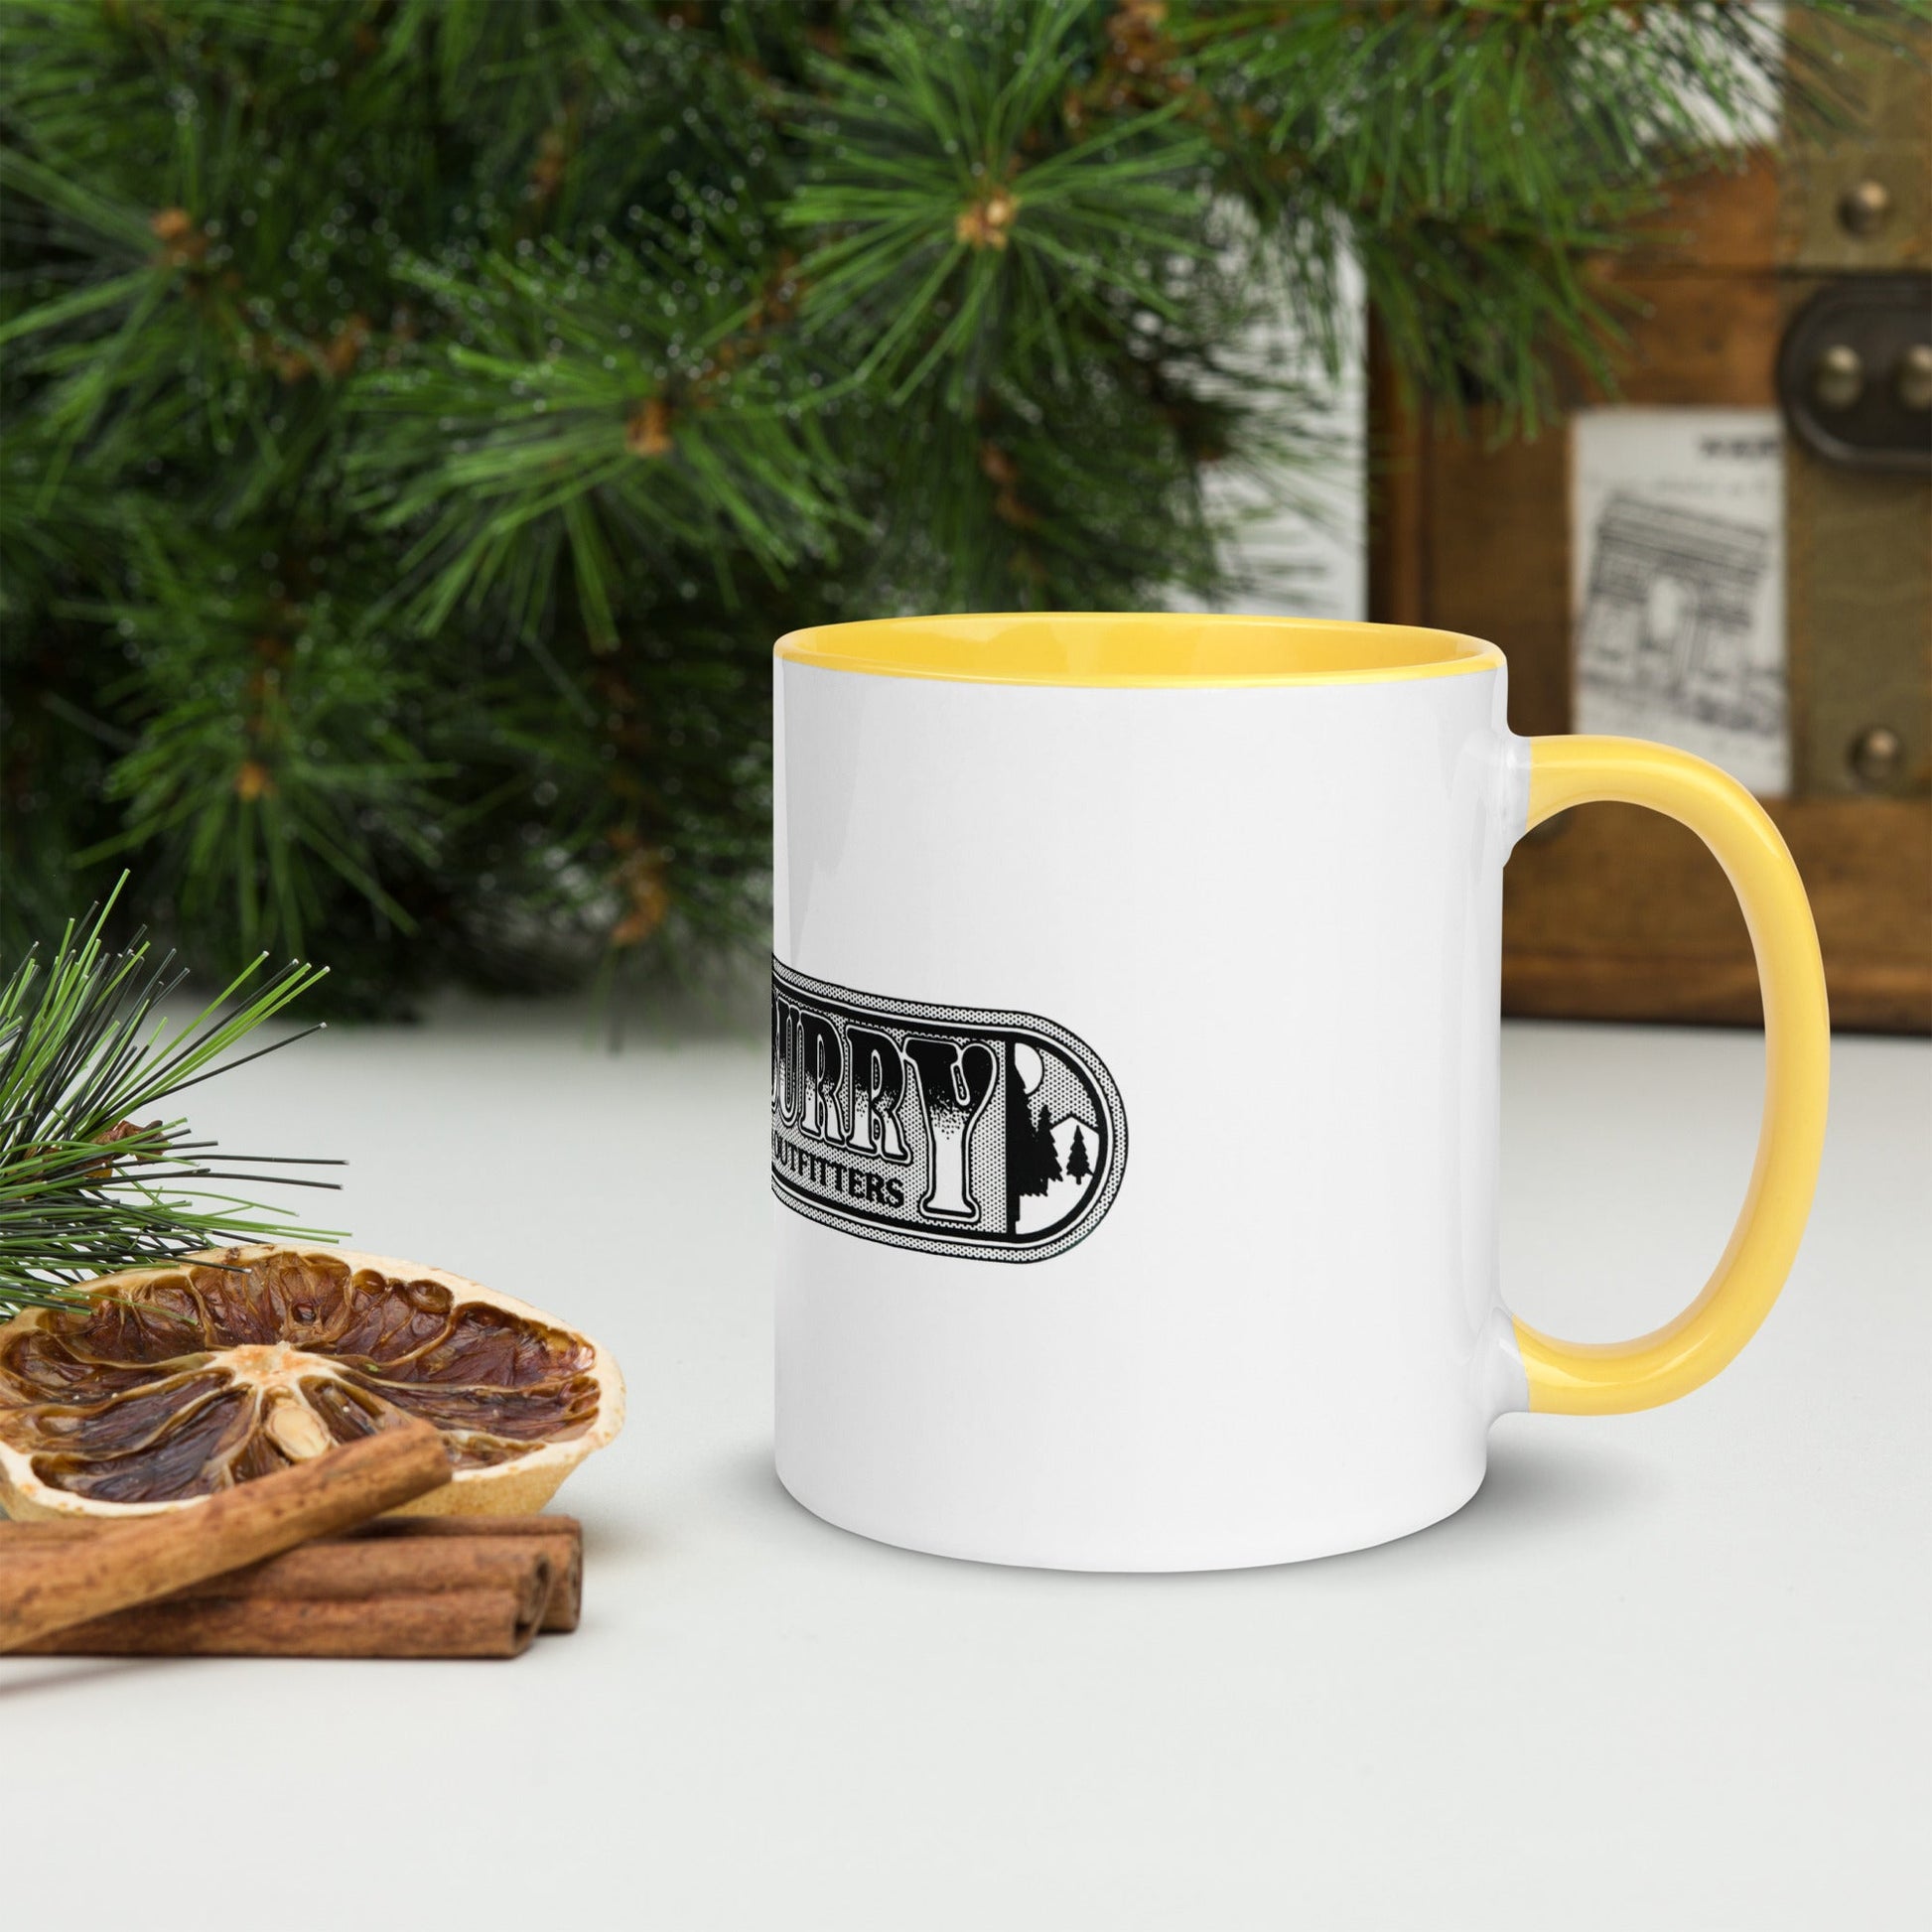 Benn~Burry Mug with Color Inside - Home - Kitchen - Coffee - Mugs - Benn~Burry